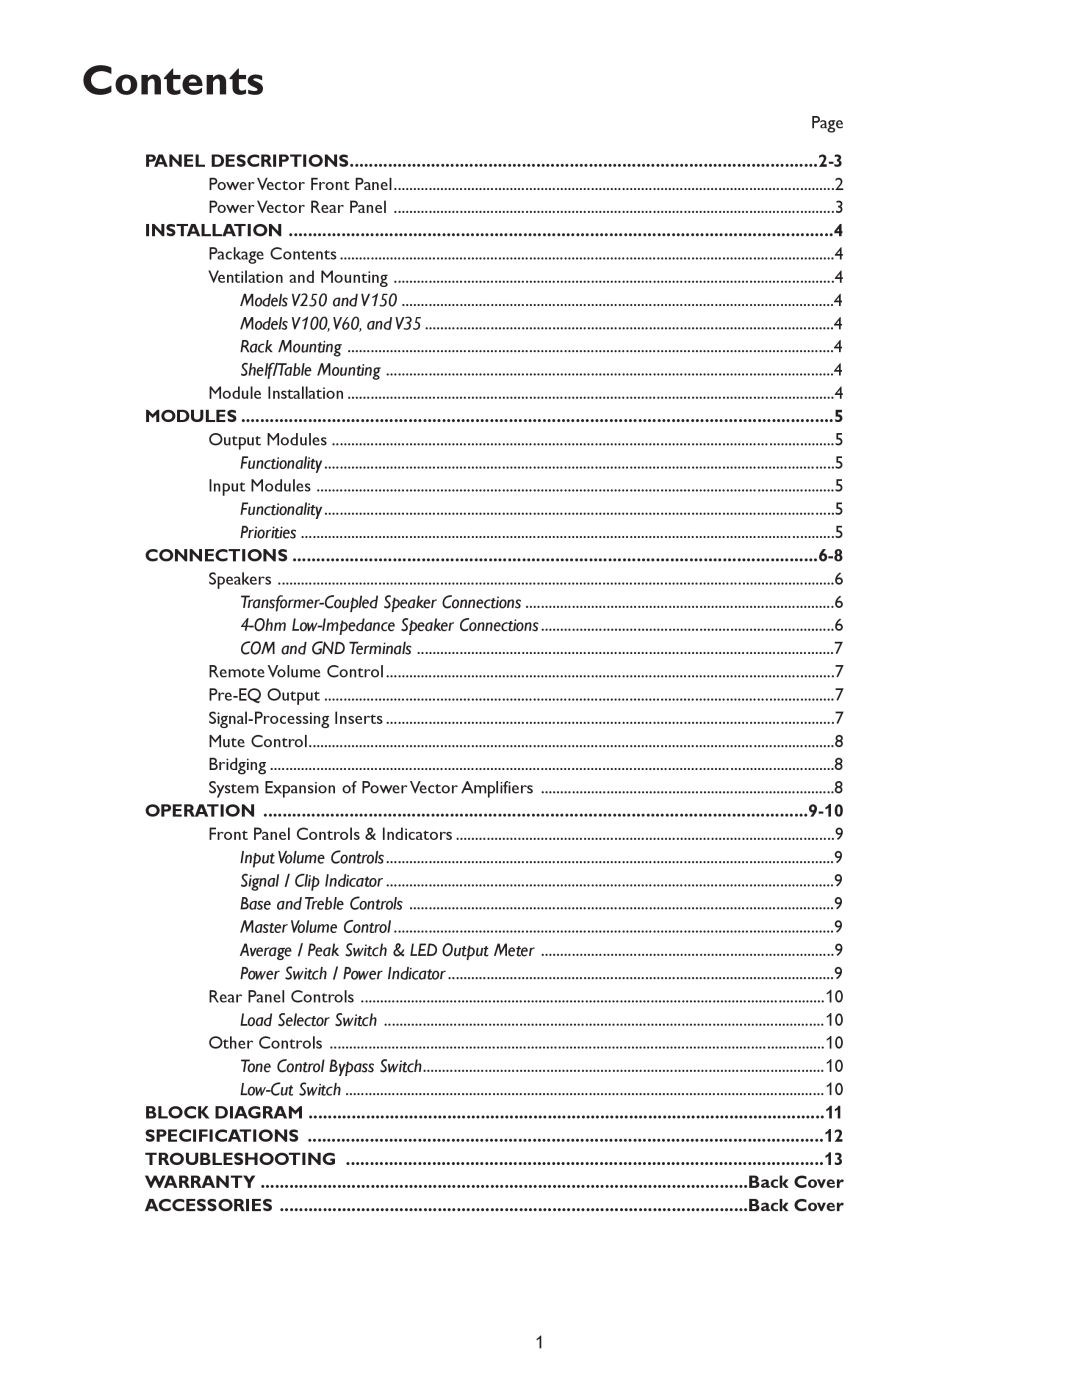 Bogen & V250, V35 specifications Contents, 9-10, Back Cover 